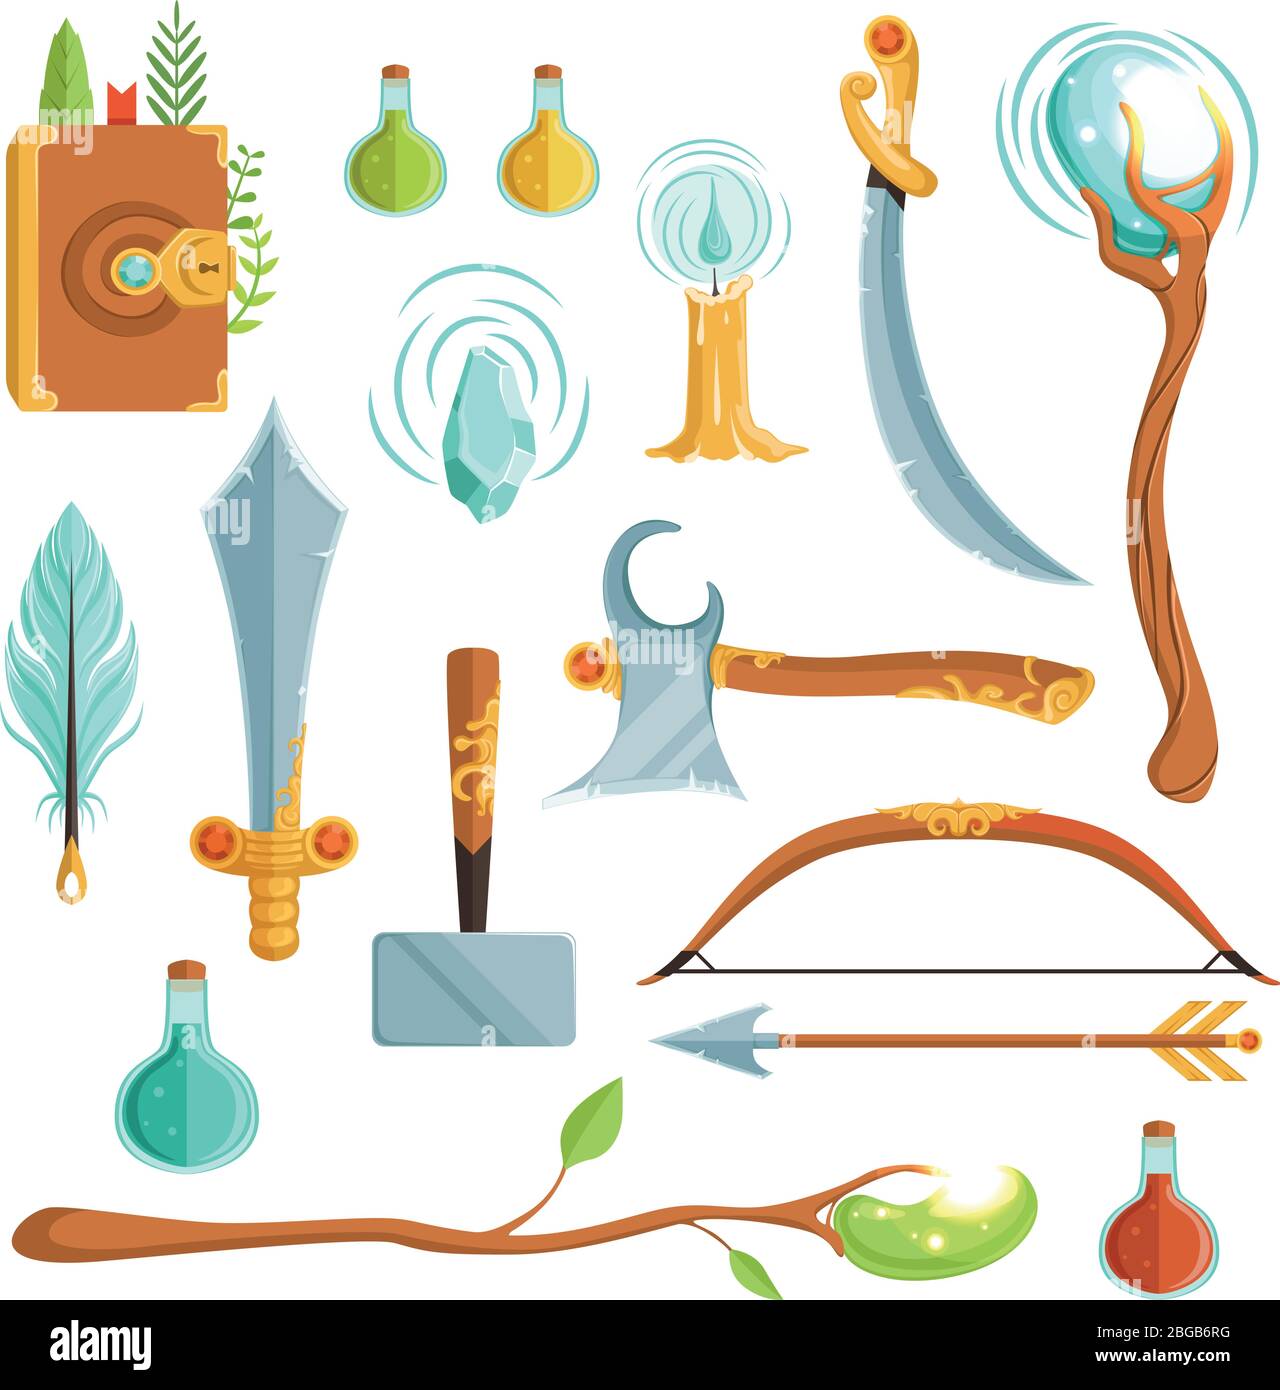 Vektor-Set von Fantasy-Magie Waffen. Illustrationen für Computerspiel Stock Vektor